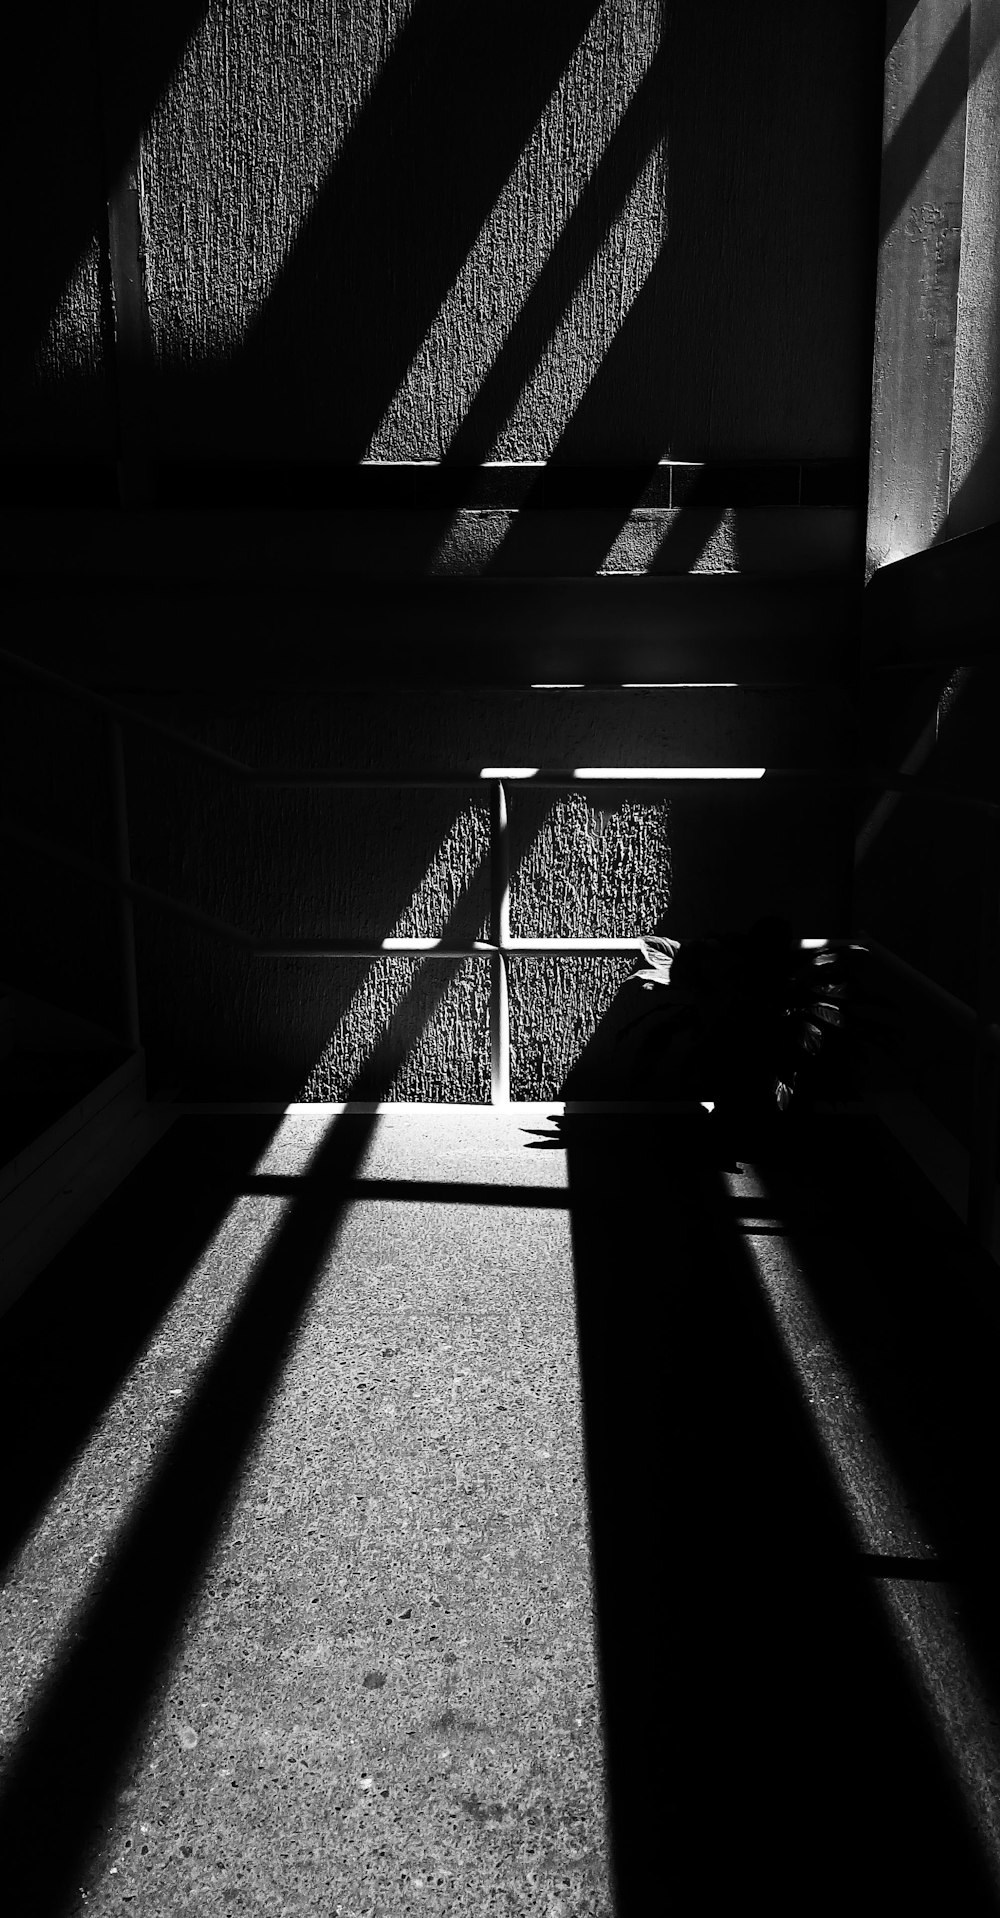 Photographie en niveaux de gris de murs avec des ombres